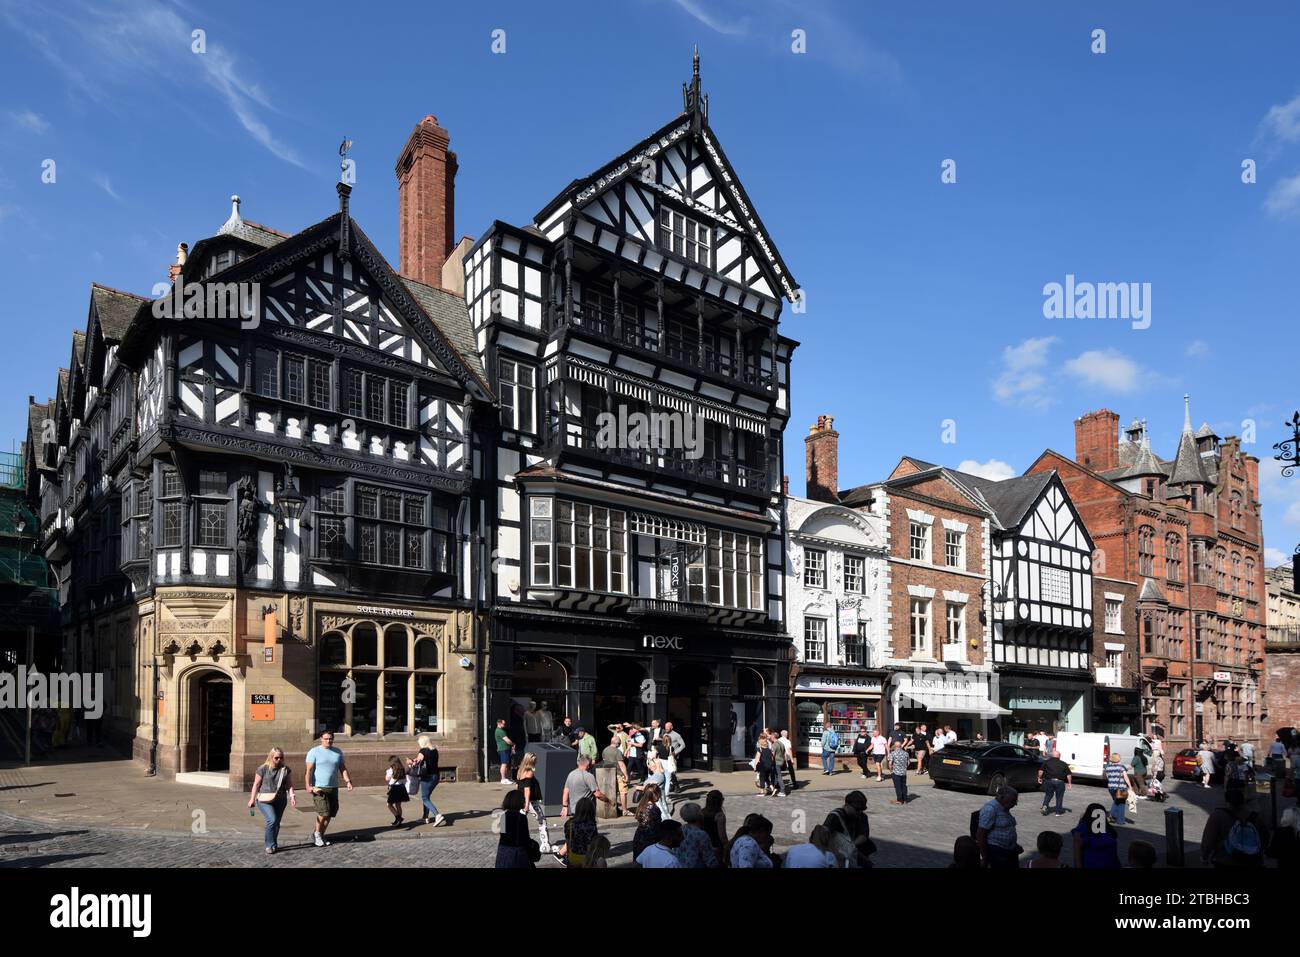 Touristes et Shoppers Eastgate Street Chester Old Town ou Historic District England UK, y compris Victorian Tudor style Corner Buildings n ° 35 et 37. Banque D'Images